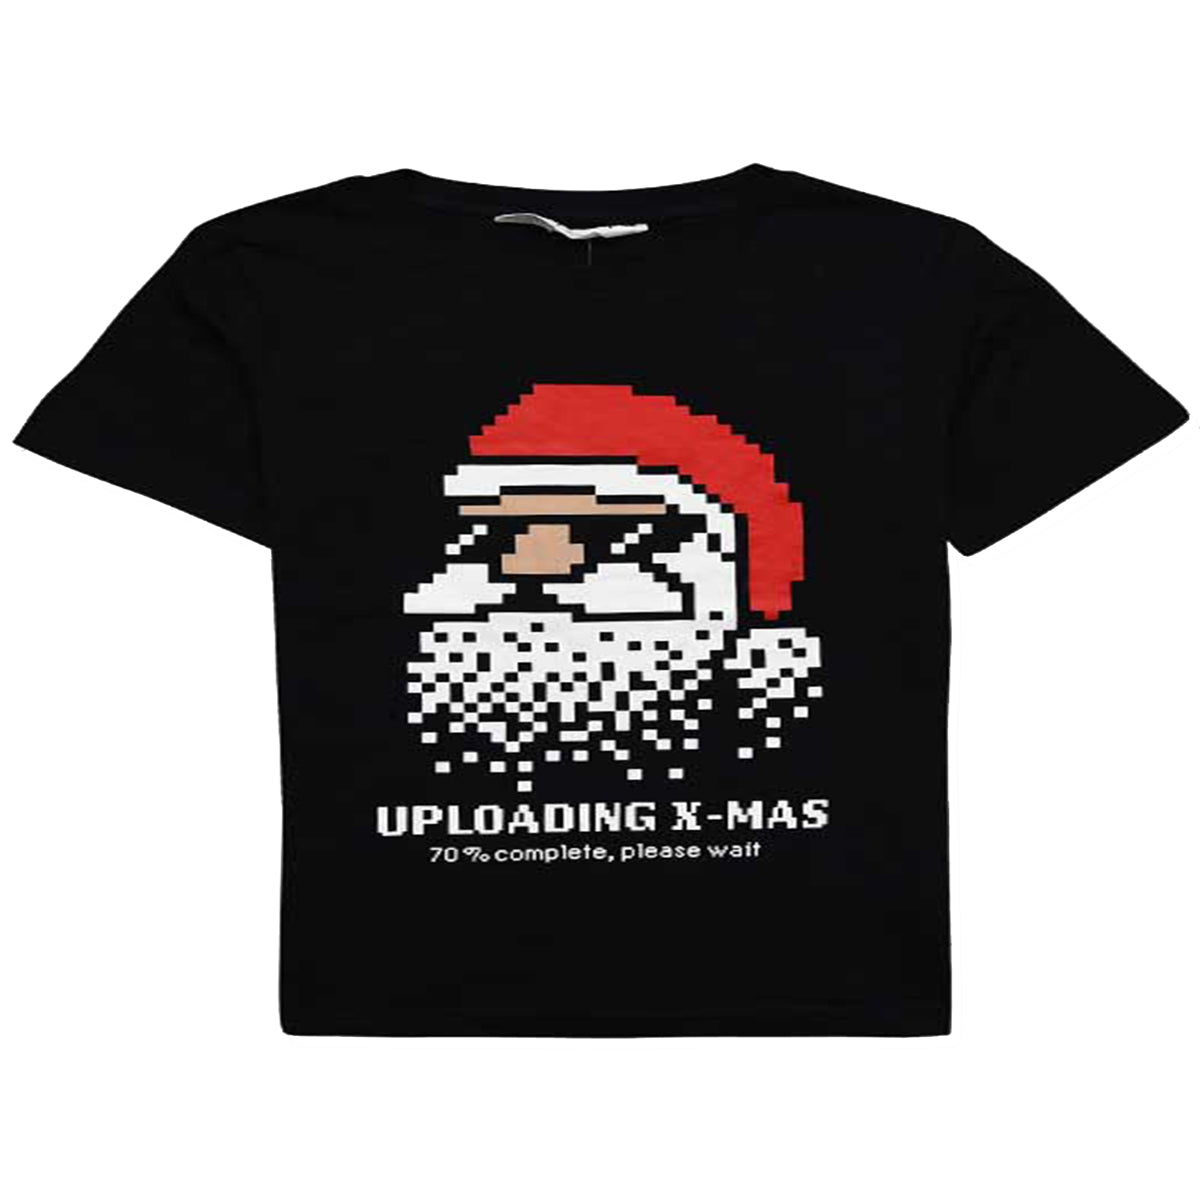 Boys black t-shirt with pixelated Santa design saying 'Uploading X-Mas.'